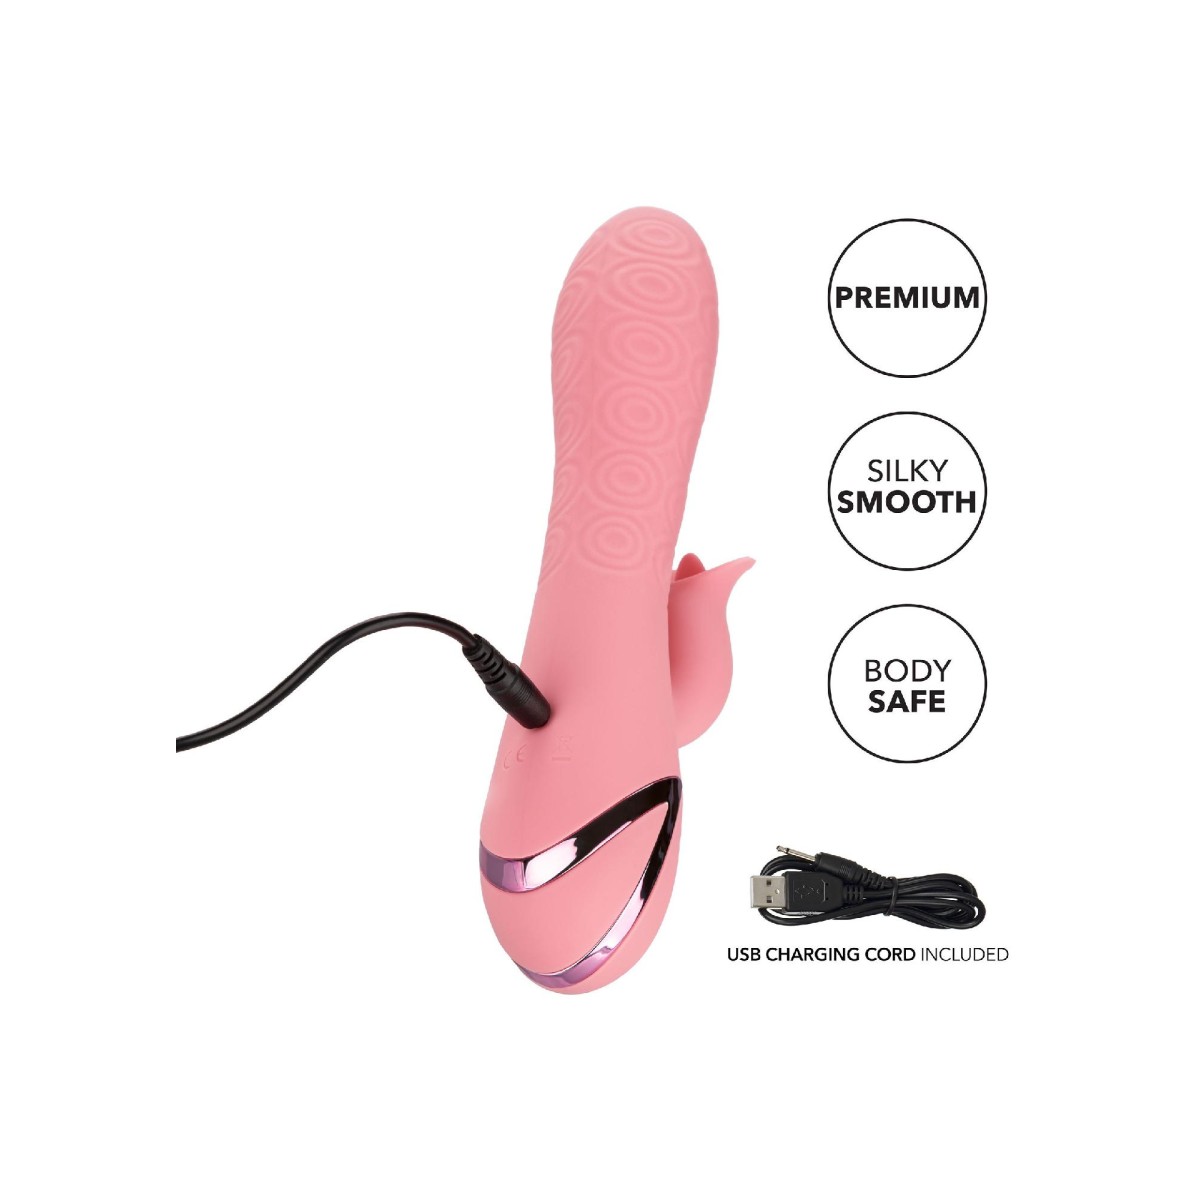 Vibratore vaginale rabbit per stimola clitoride Pasadena Player